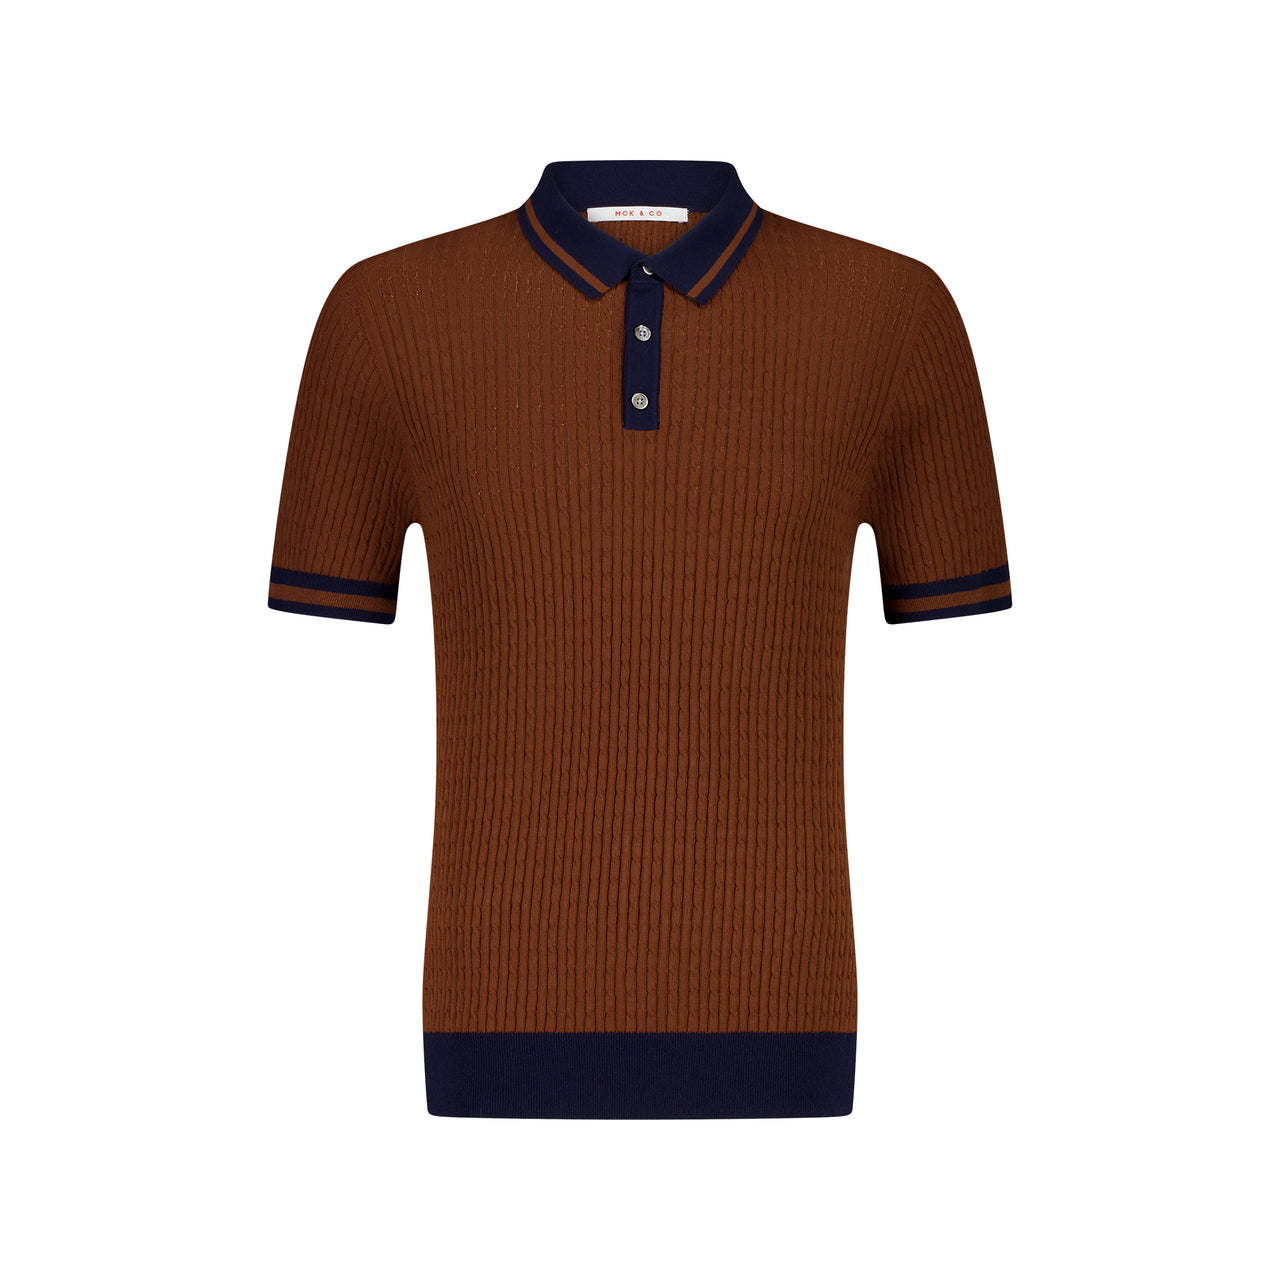 MCKINNON Buttoned Contrast Shirt BROWN/NAVY